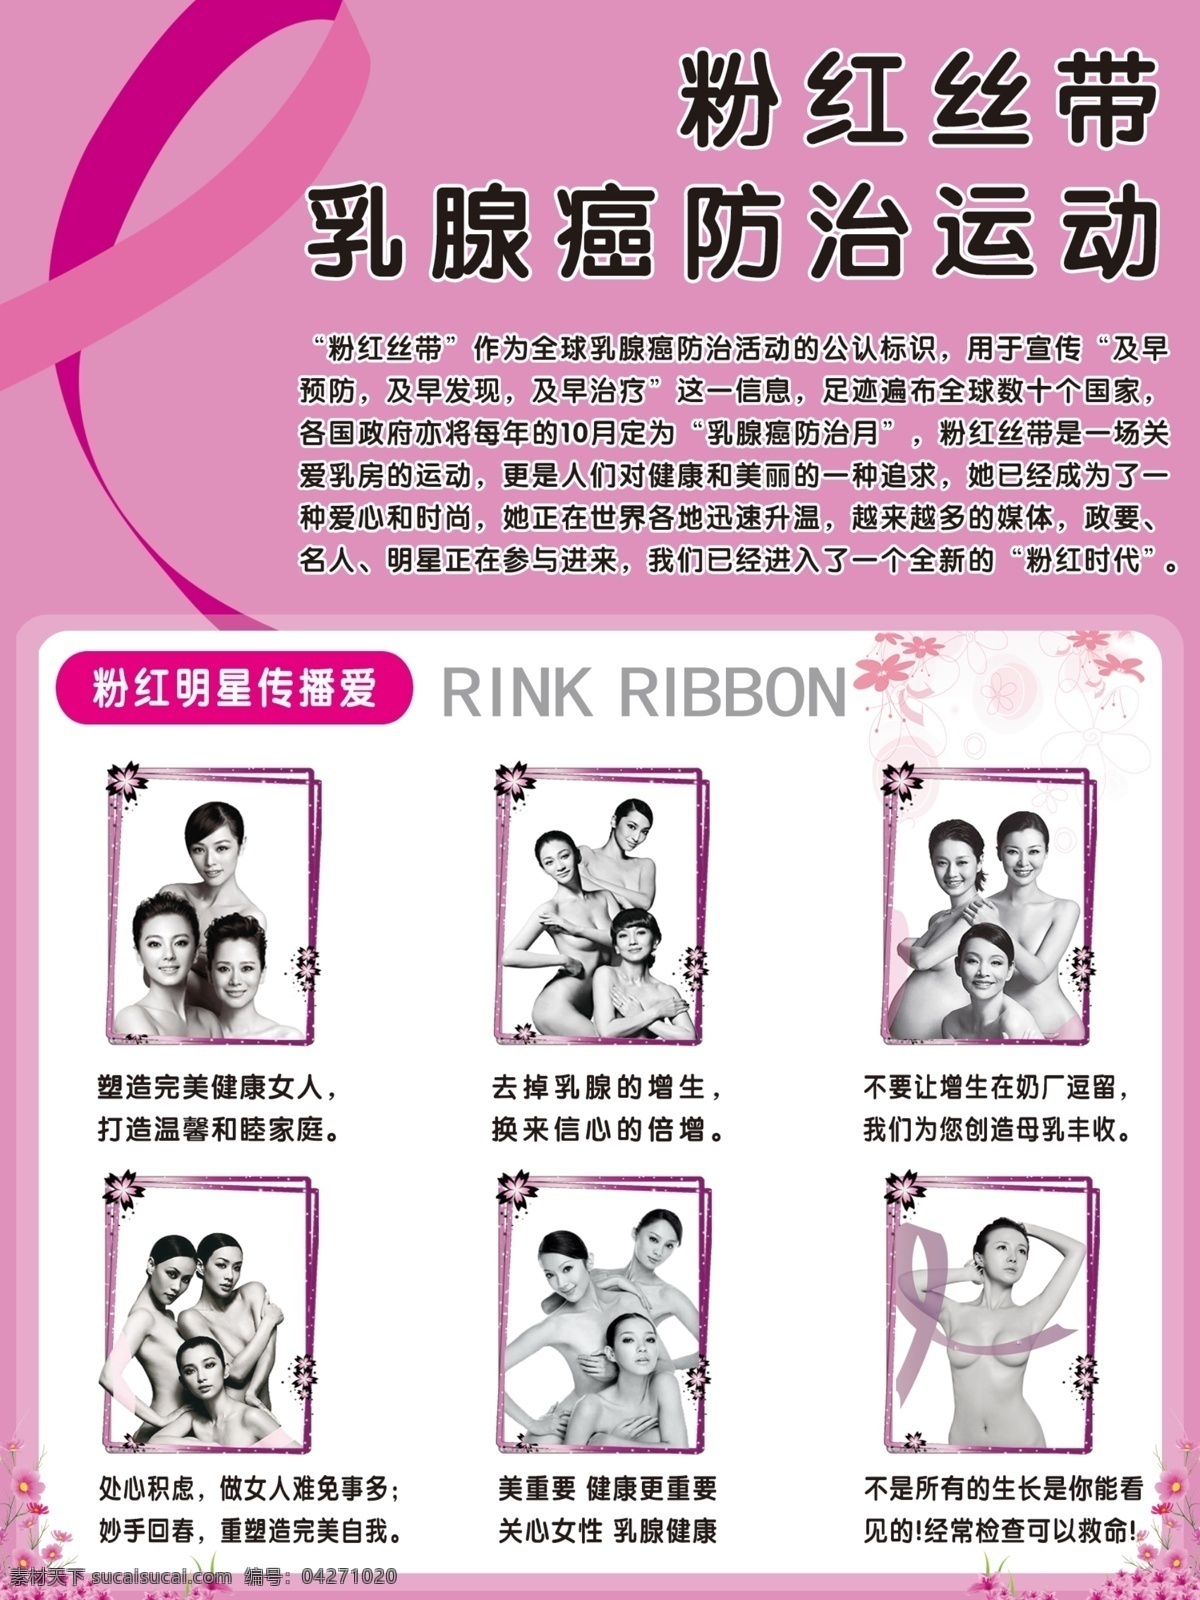 粉红丝带 乳腺癌 防治 活动 粉红丝带活动